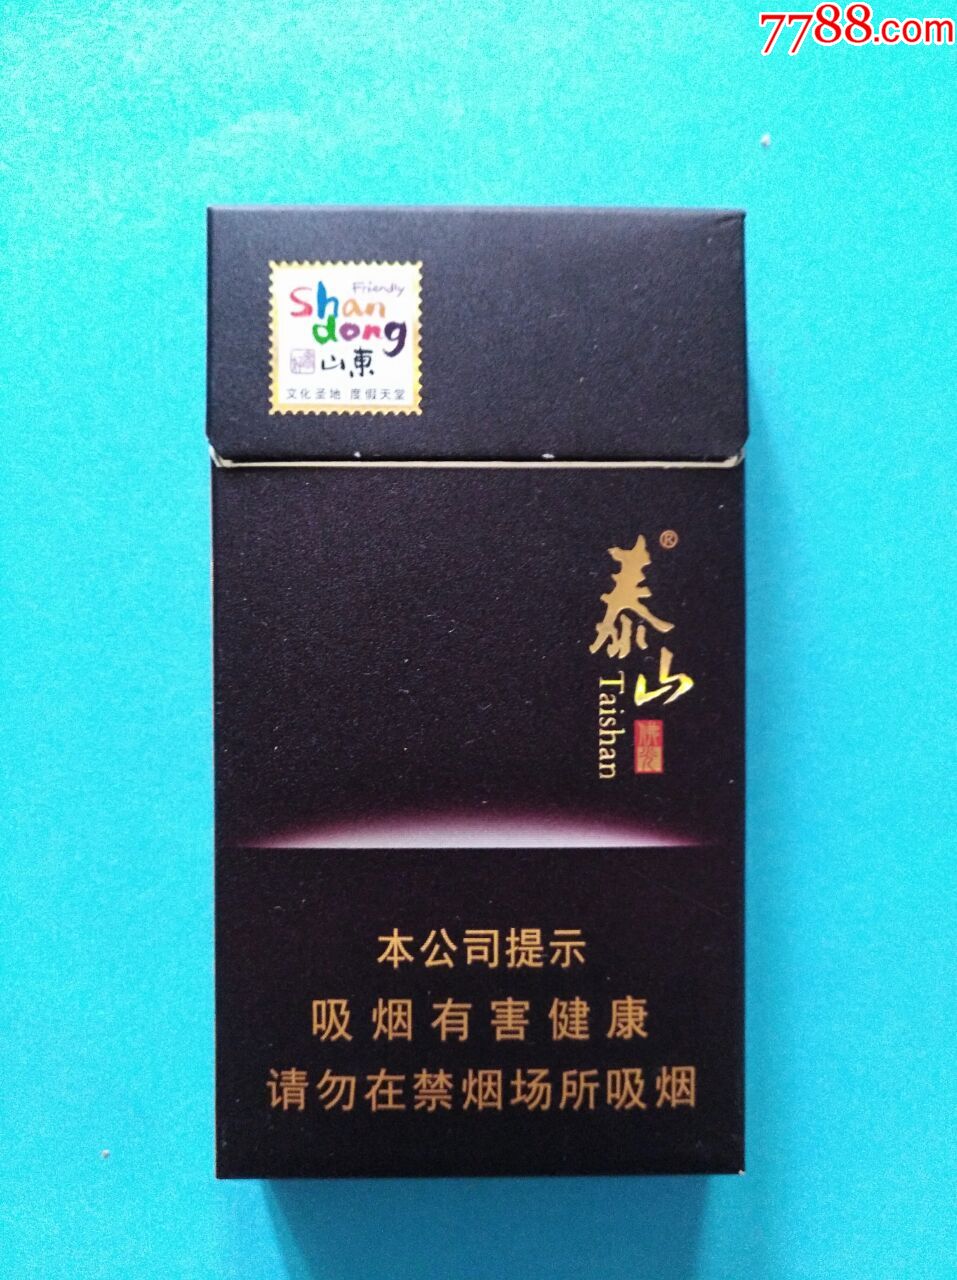 香烟2022香烟最新价格:泰山佛光(细支)多少钱一盒 泰山佛光(细支)香烟